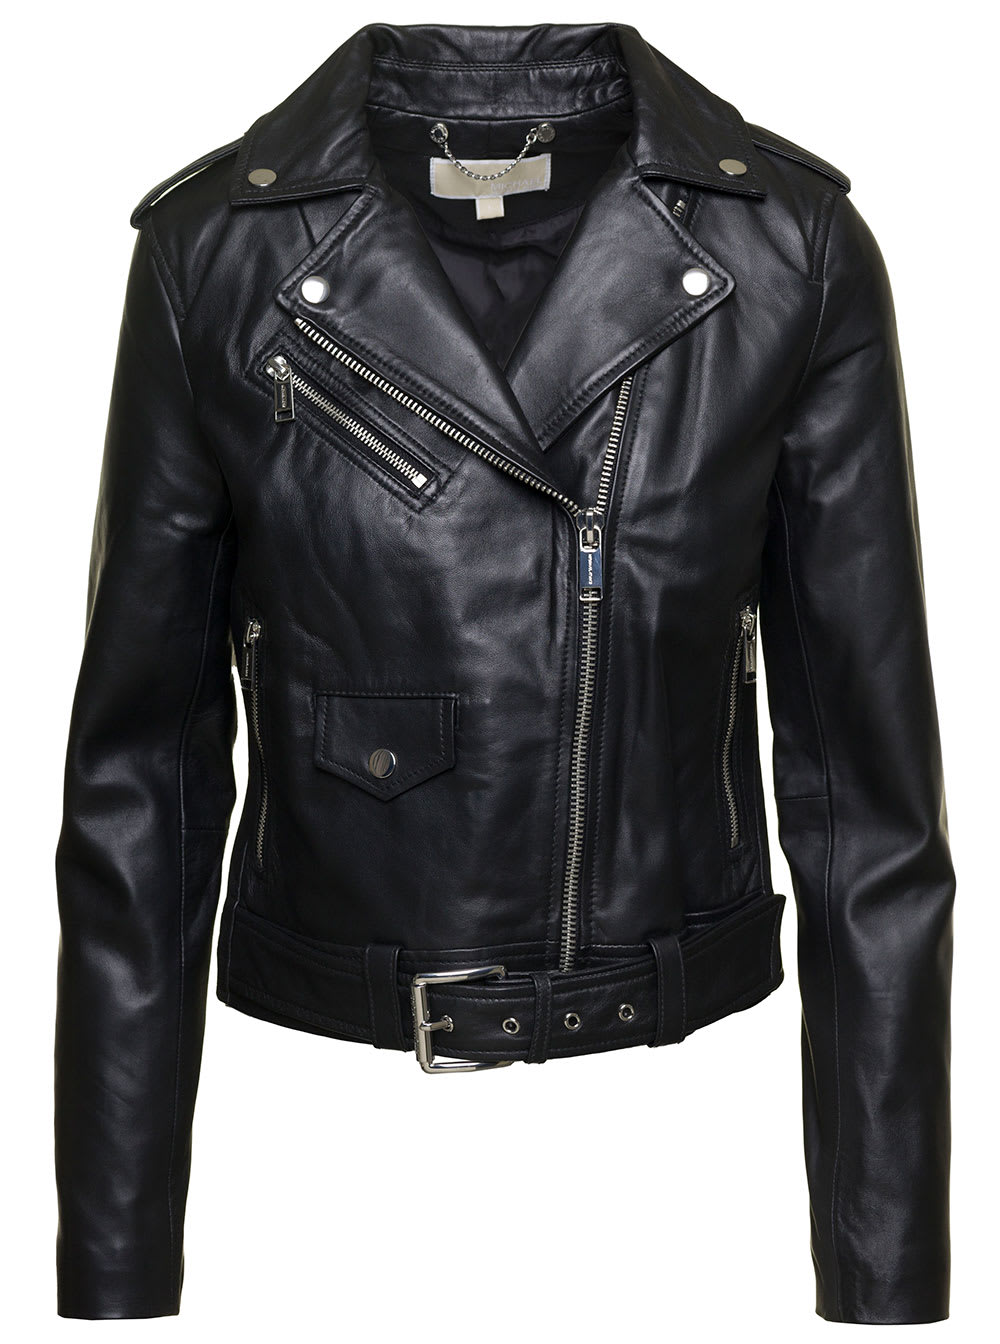 M Michael Kors Womans Black Leather Biker Jacket